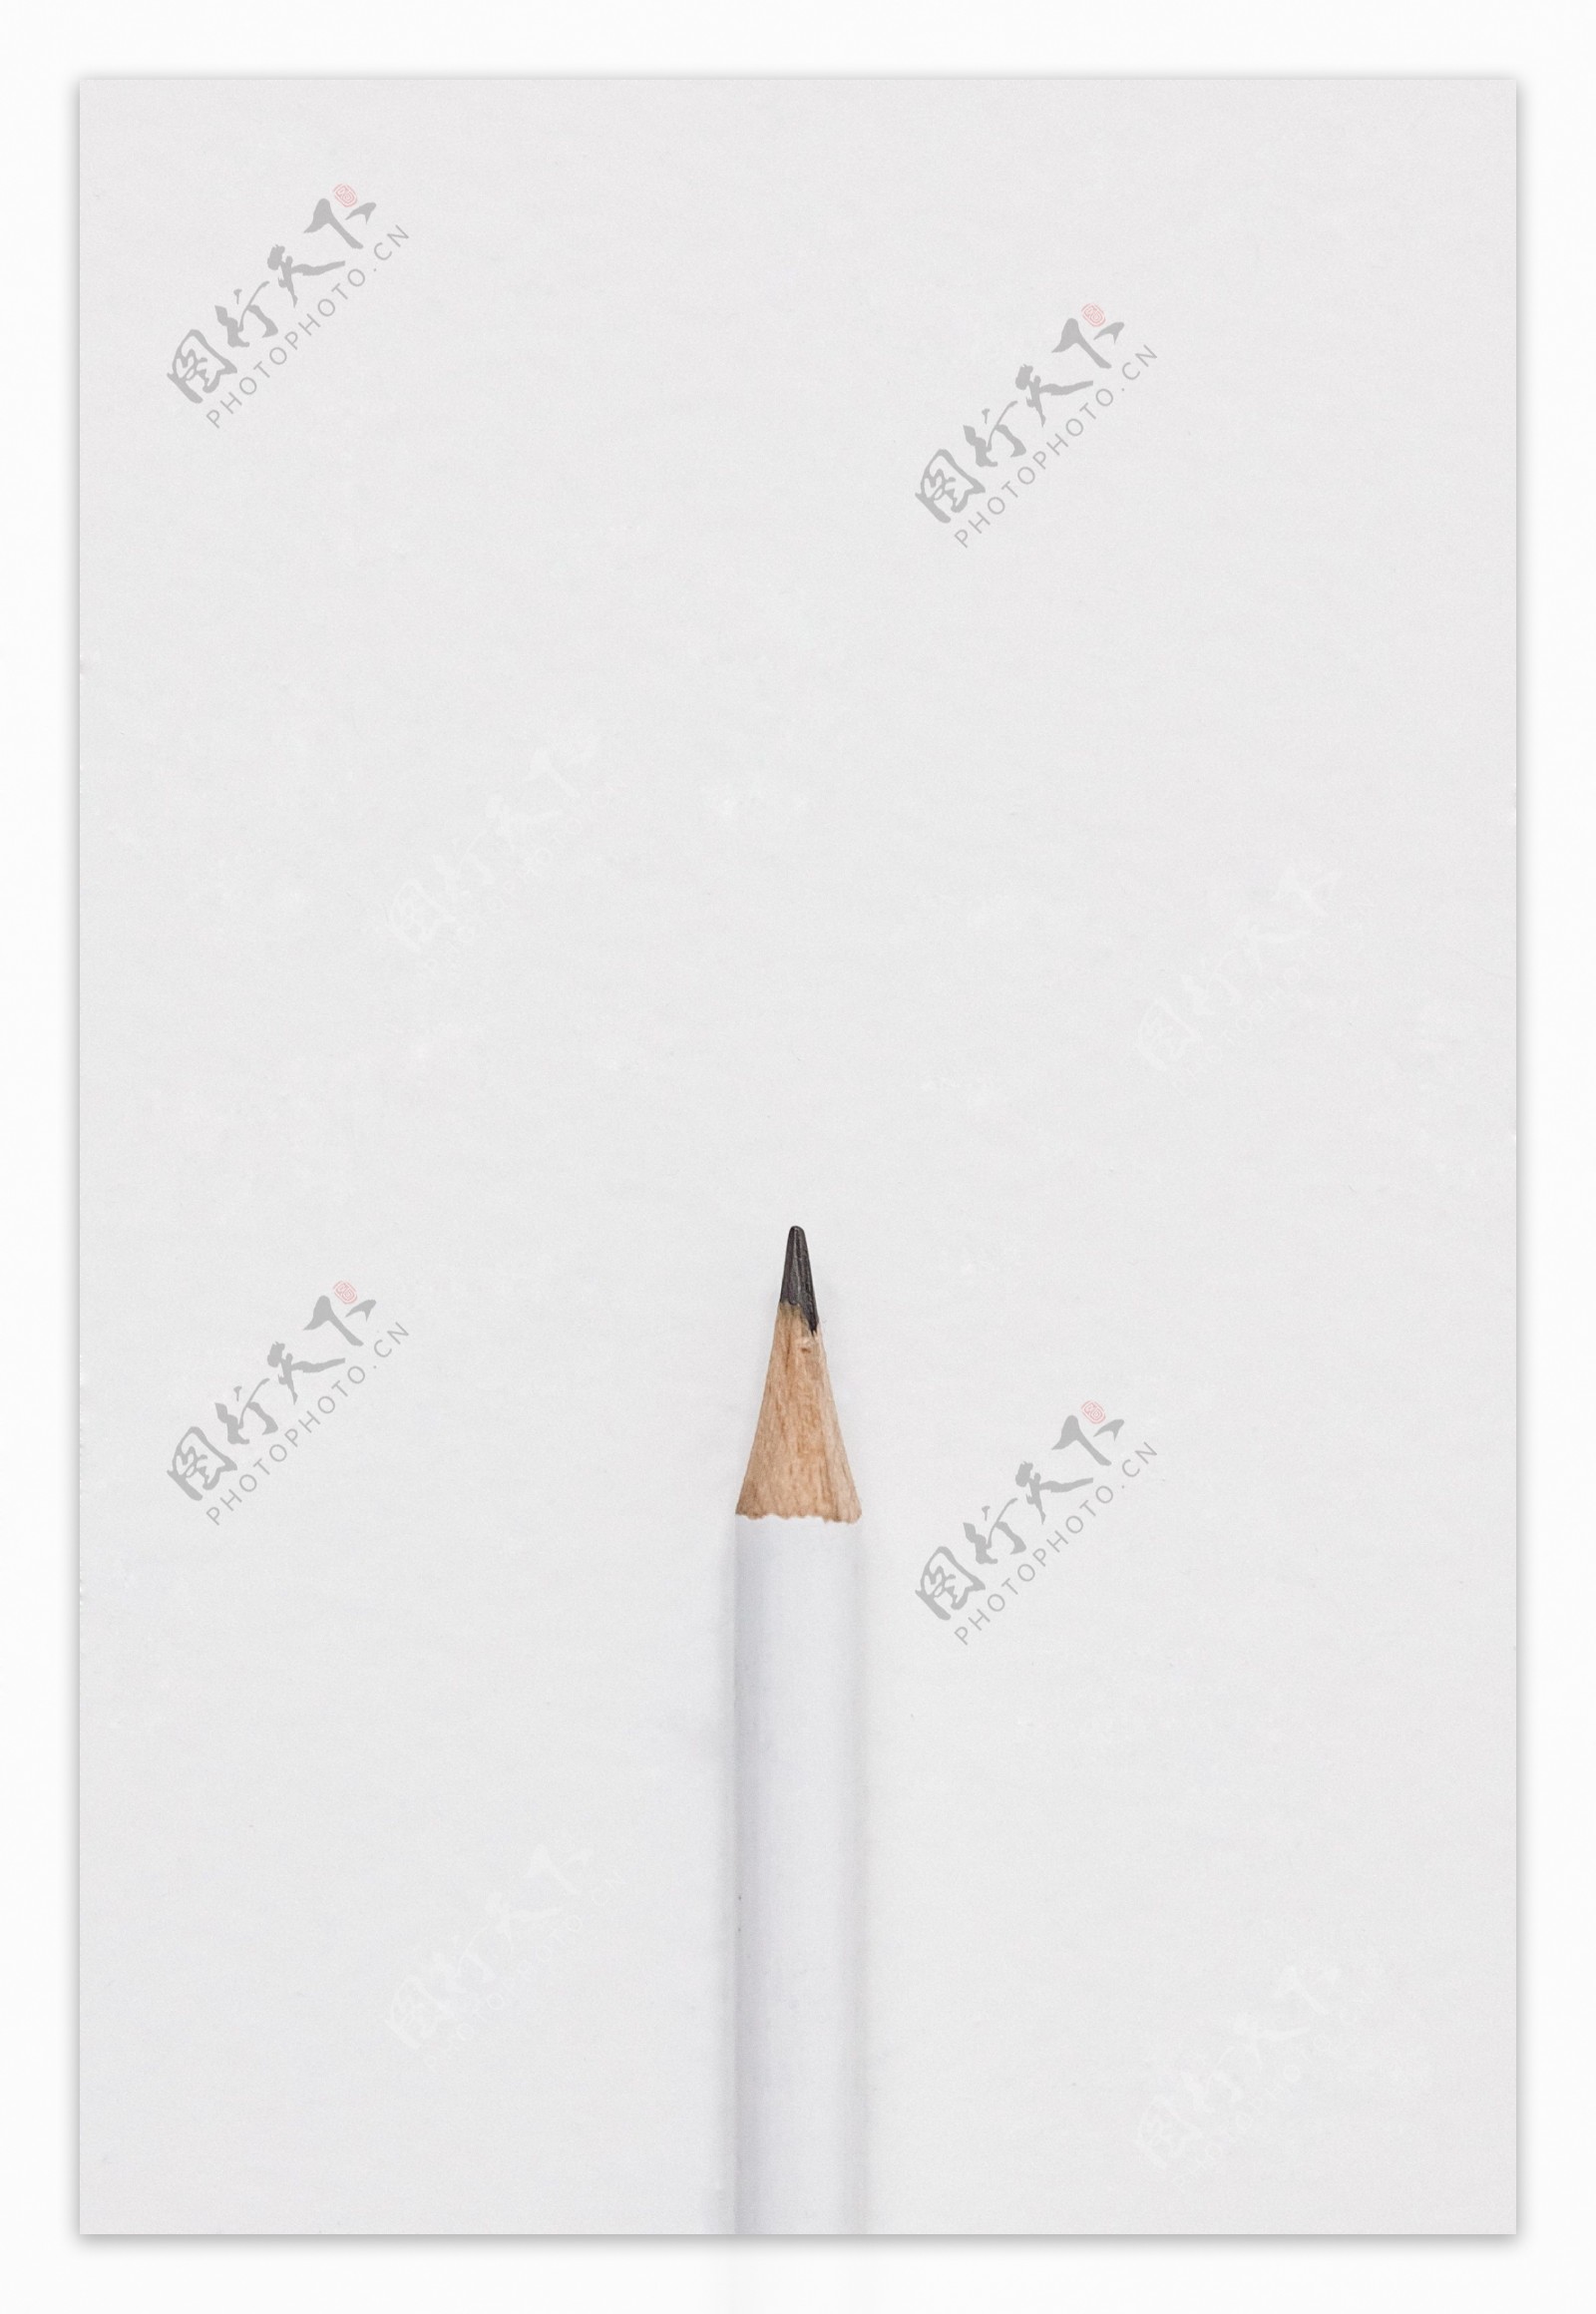 白色背景上的白色铅笔